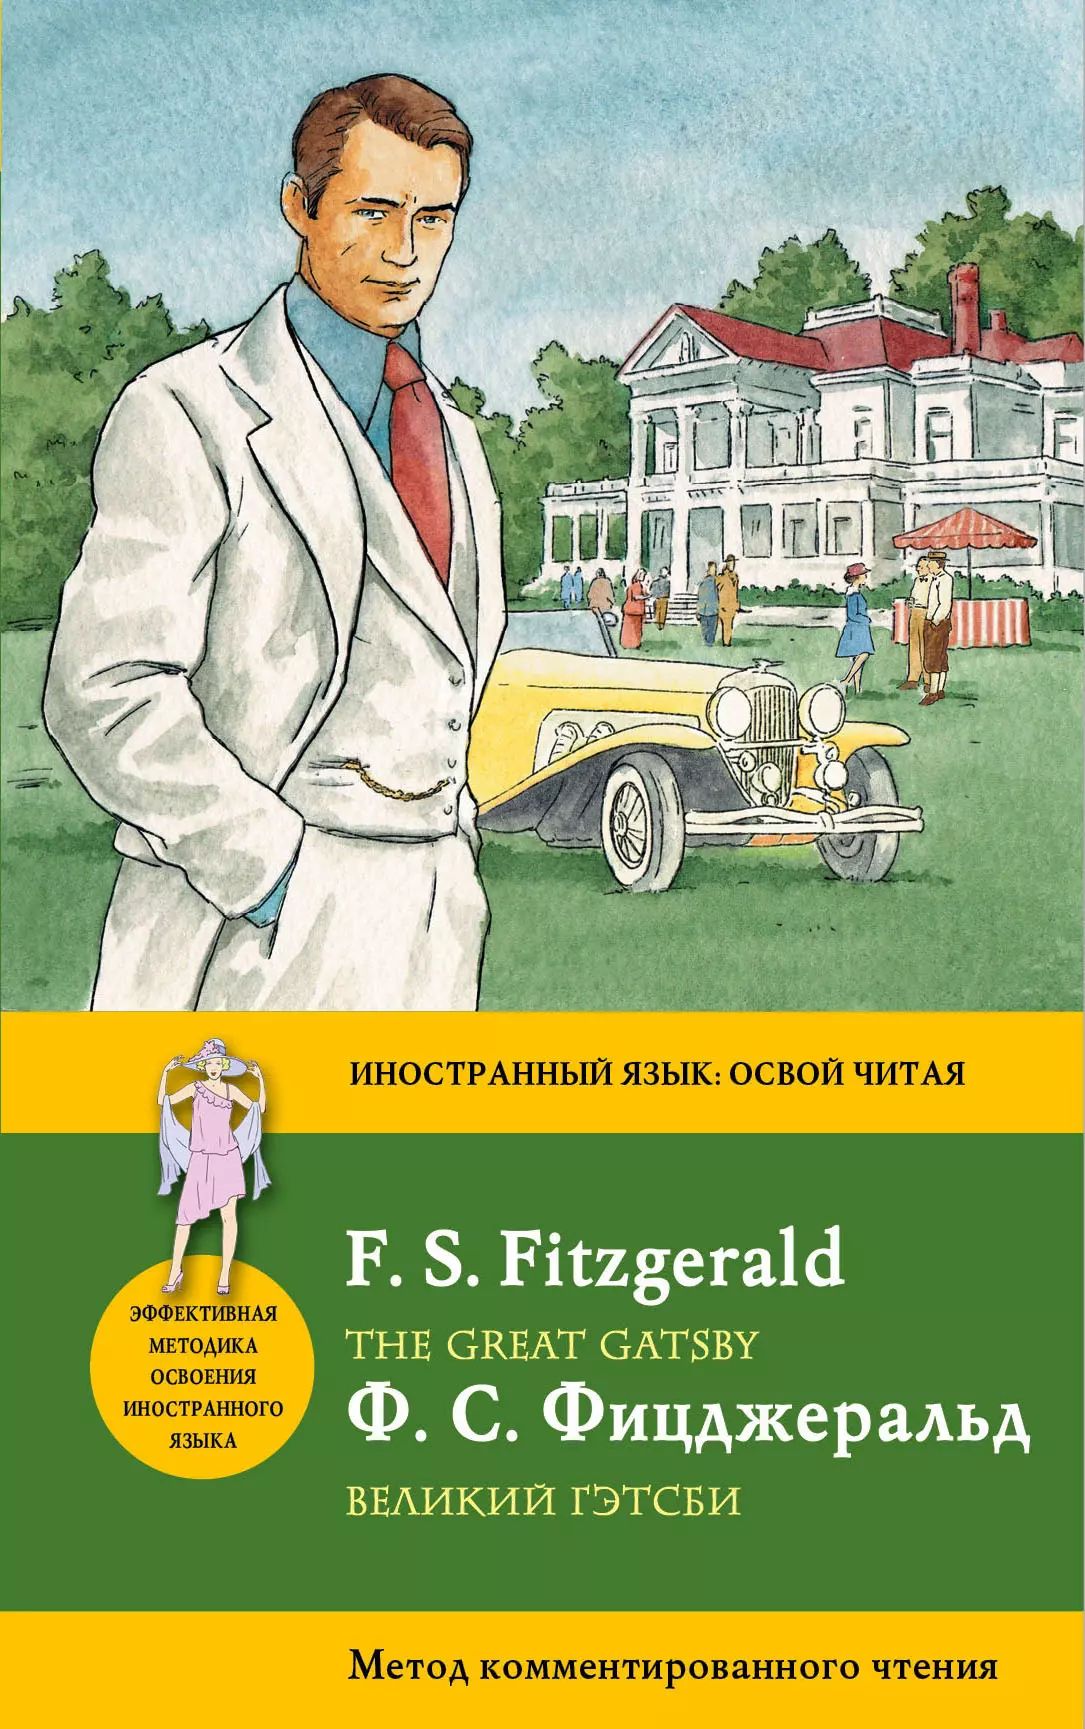 Фицджеральд Френсис Скотт - Великий Гэтсби = The Great Gatsby: метод комментированного чтения